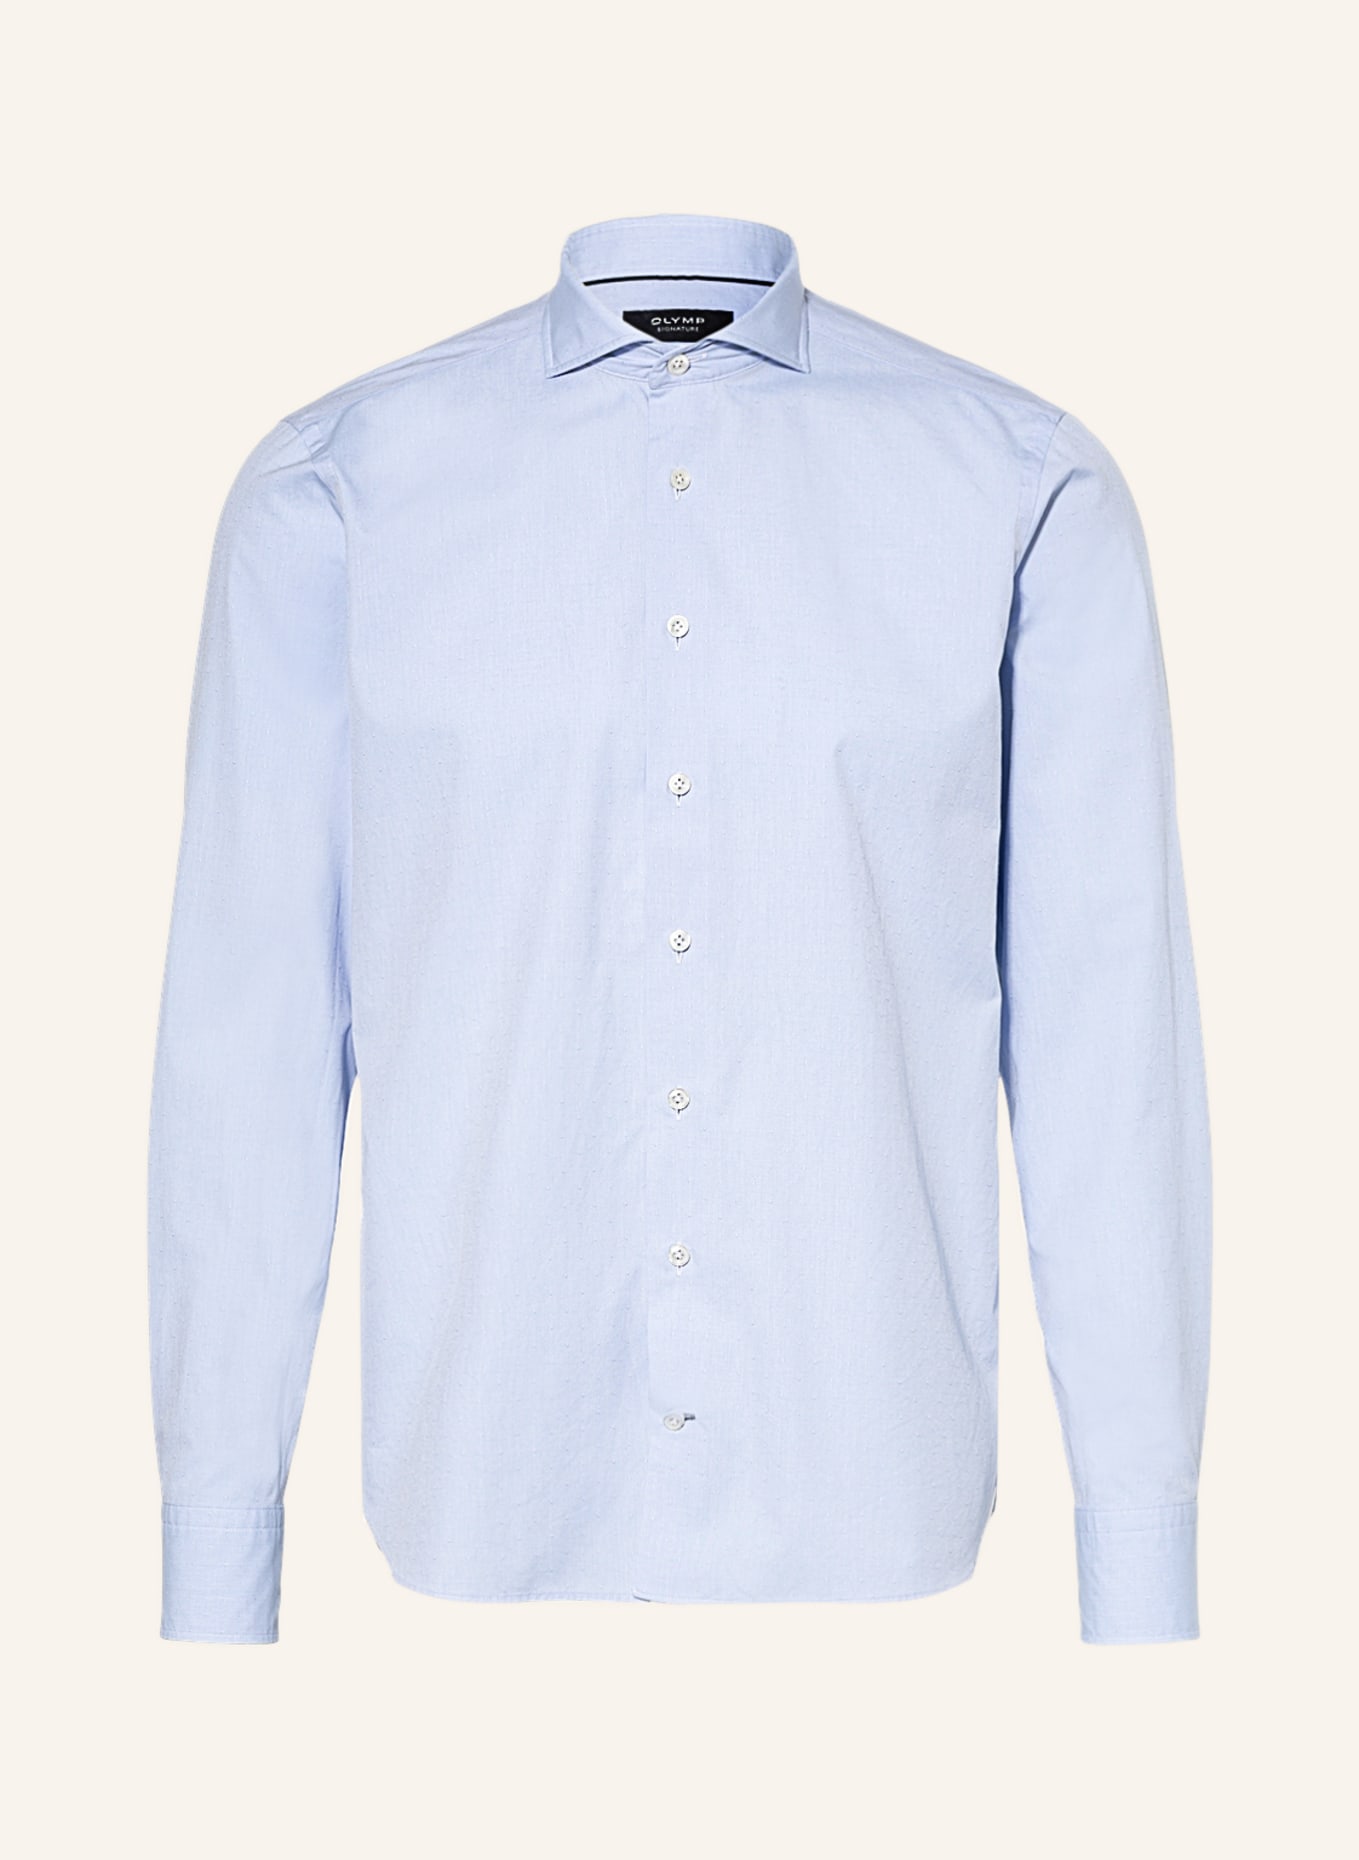 OLYMP SIGNATURE Hemd tailored fit, Farbe: HELLBLAU (Bild 1)